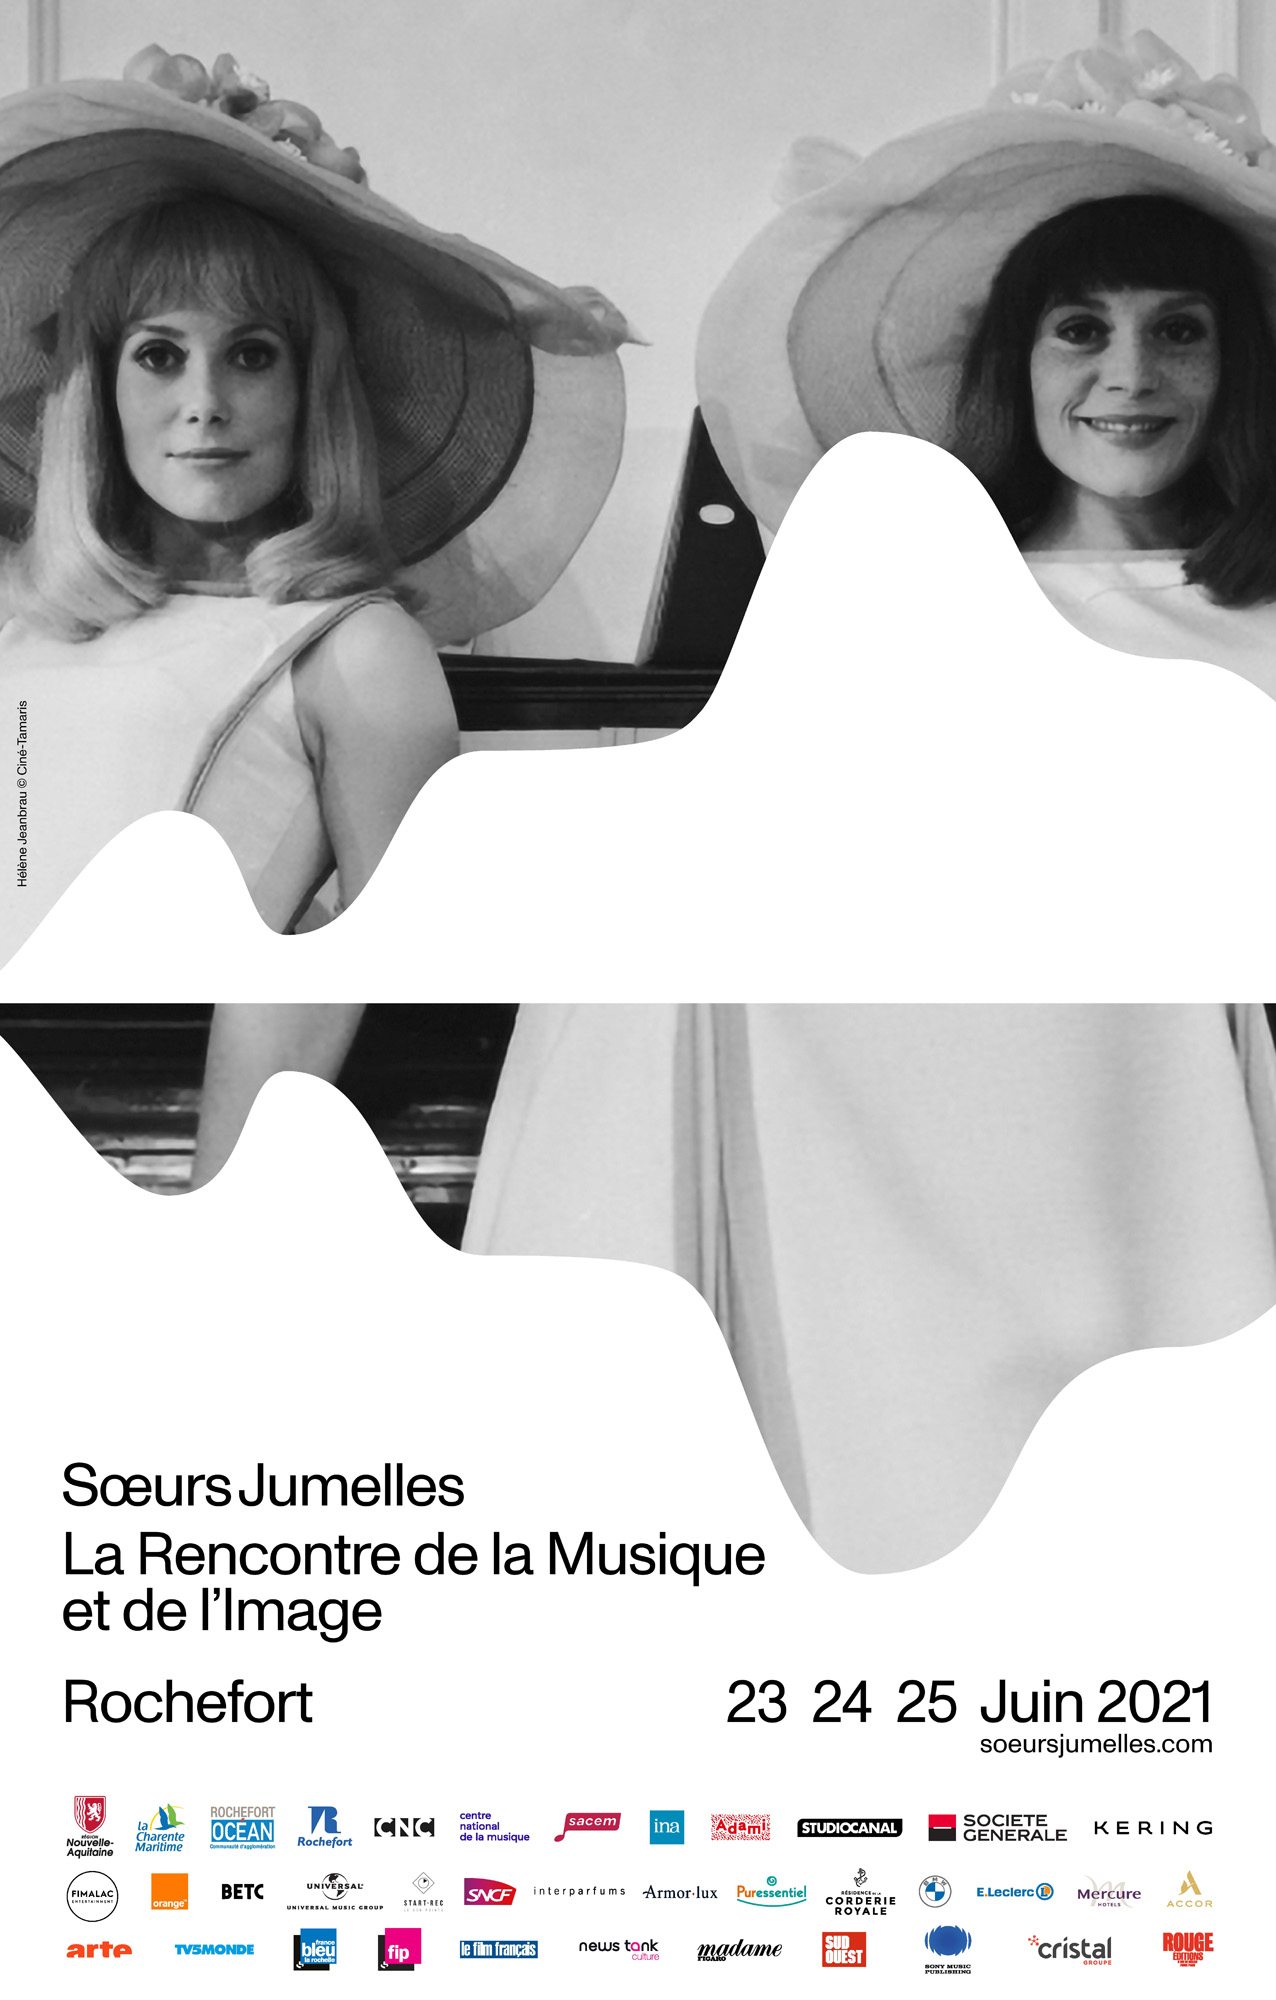 Julie Gayet rend hommage aux “Demoiselles de Rochefort” avec son propre festival